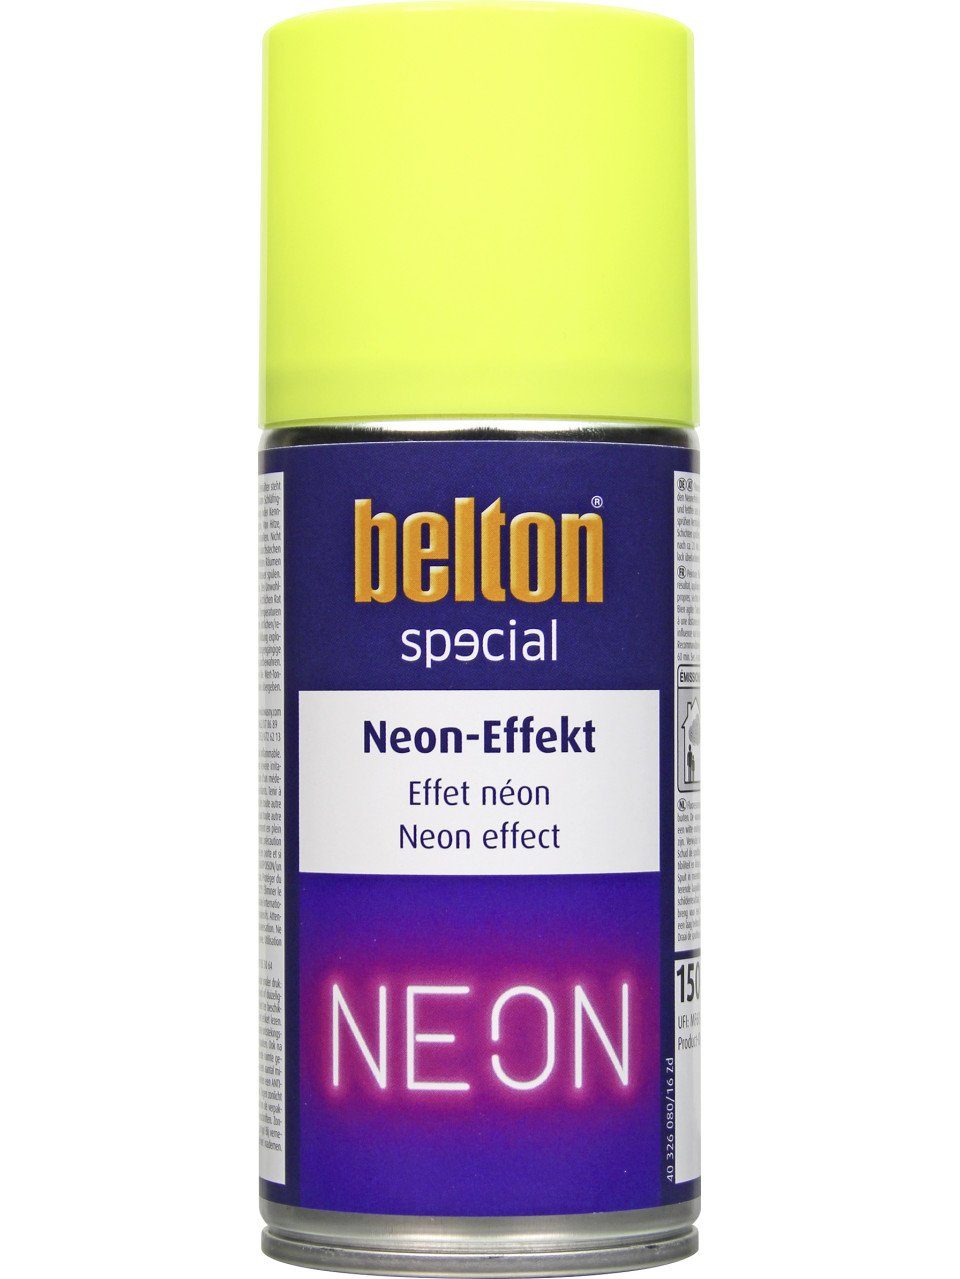 [Sie können echte Produkte zu günstigen Preisen kaufen!] belton Sprühlack Belton special Spray ml 150 Neon-Effekt gelb